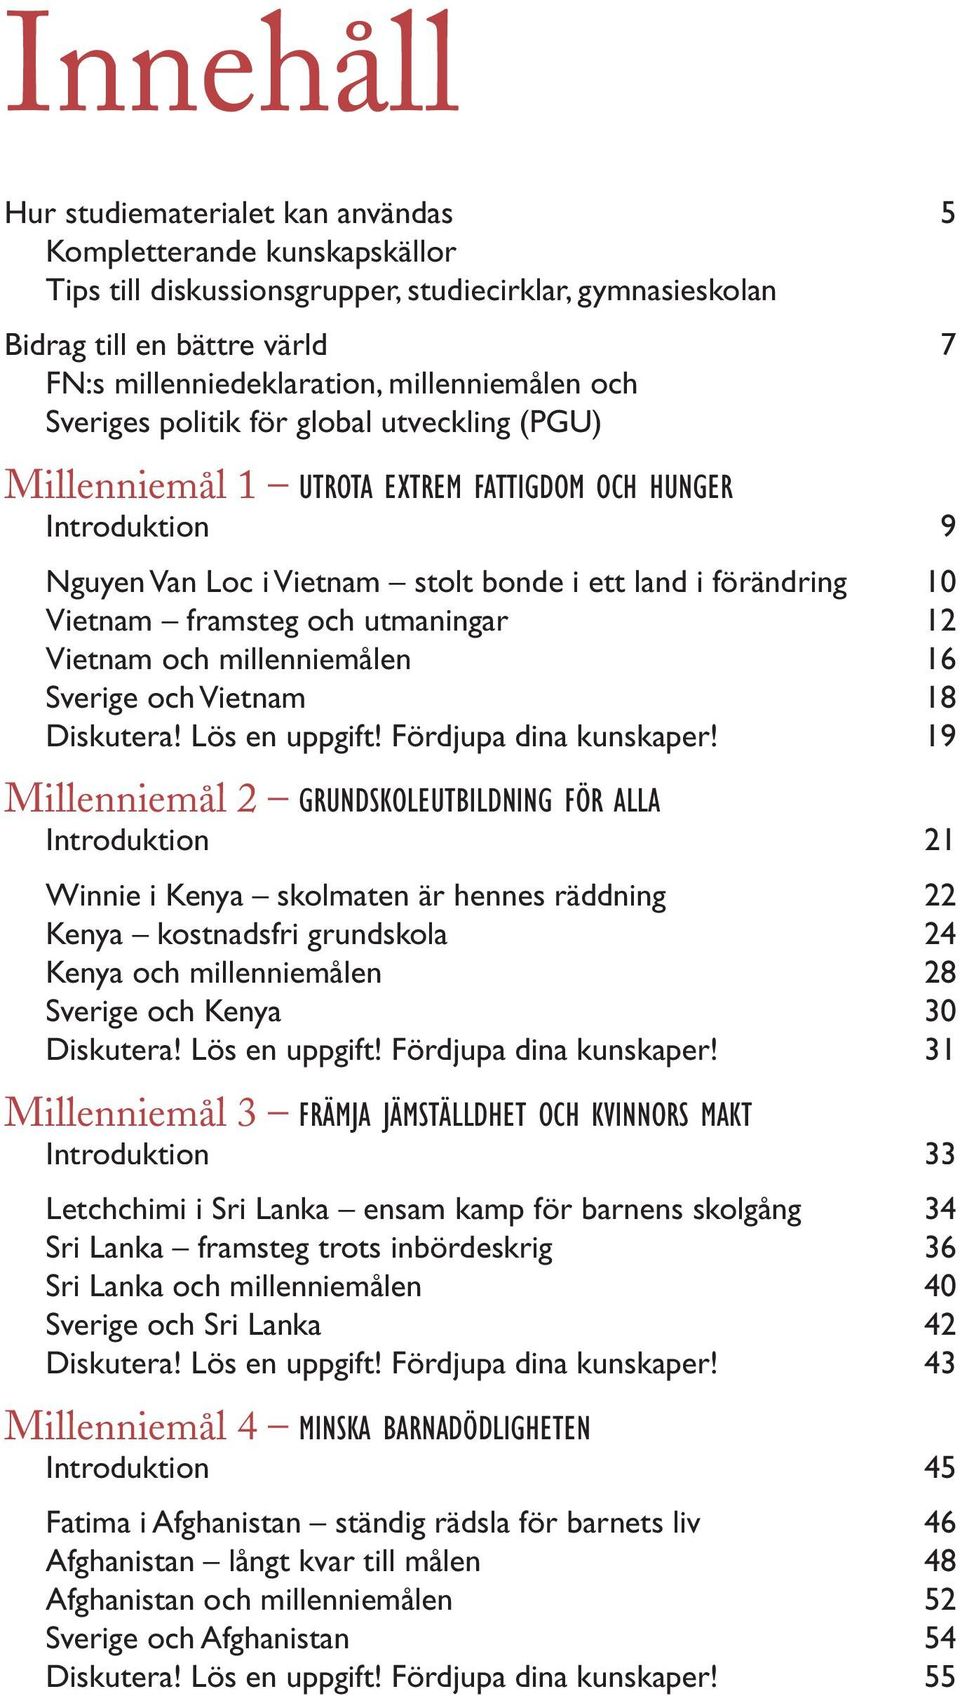 Vietnam framsteg och utmaningar 12 Vietnam och millenniemålen 16 Sverige och Vietnam 18 Diskutera! Lös en uppgift! Fördjupa dina kunskaper!